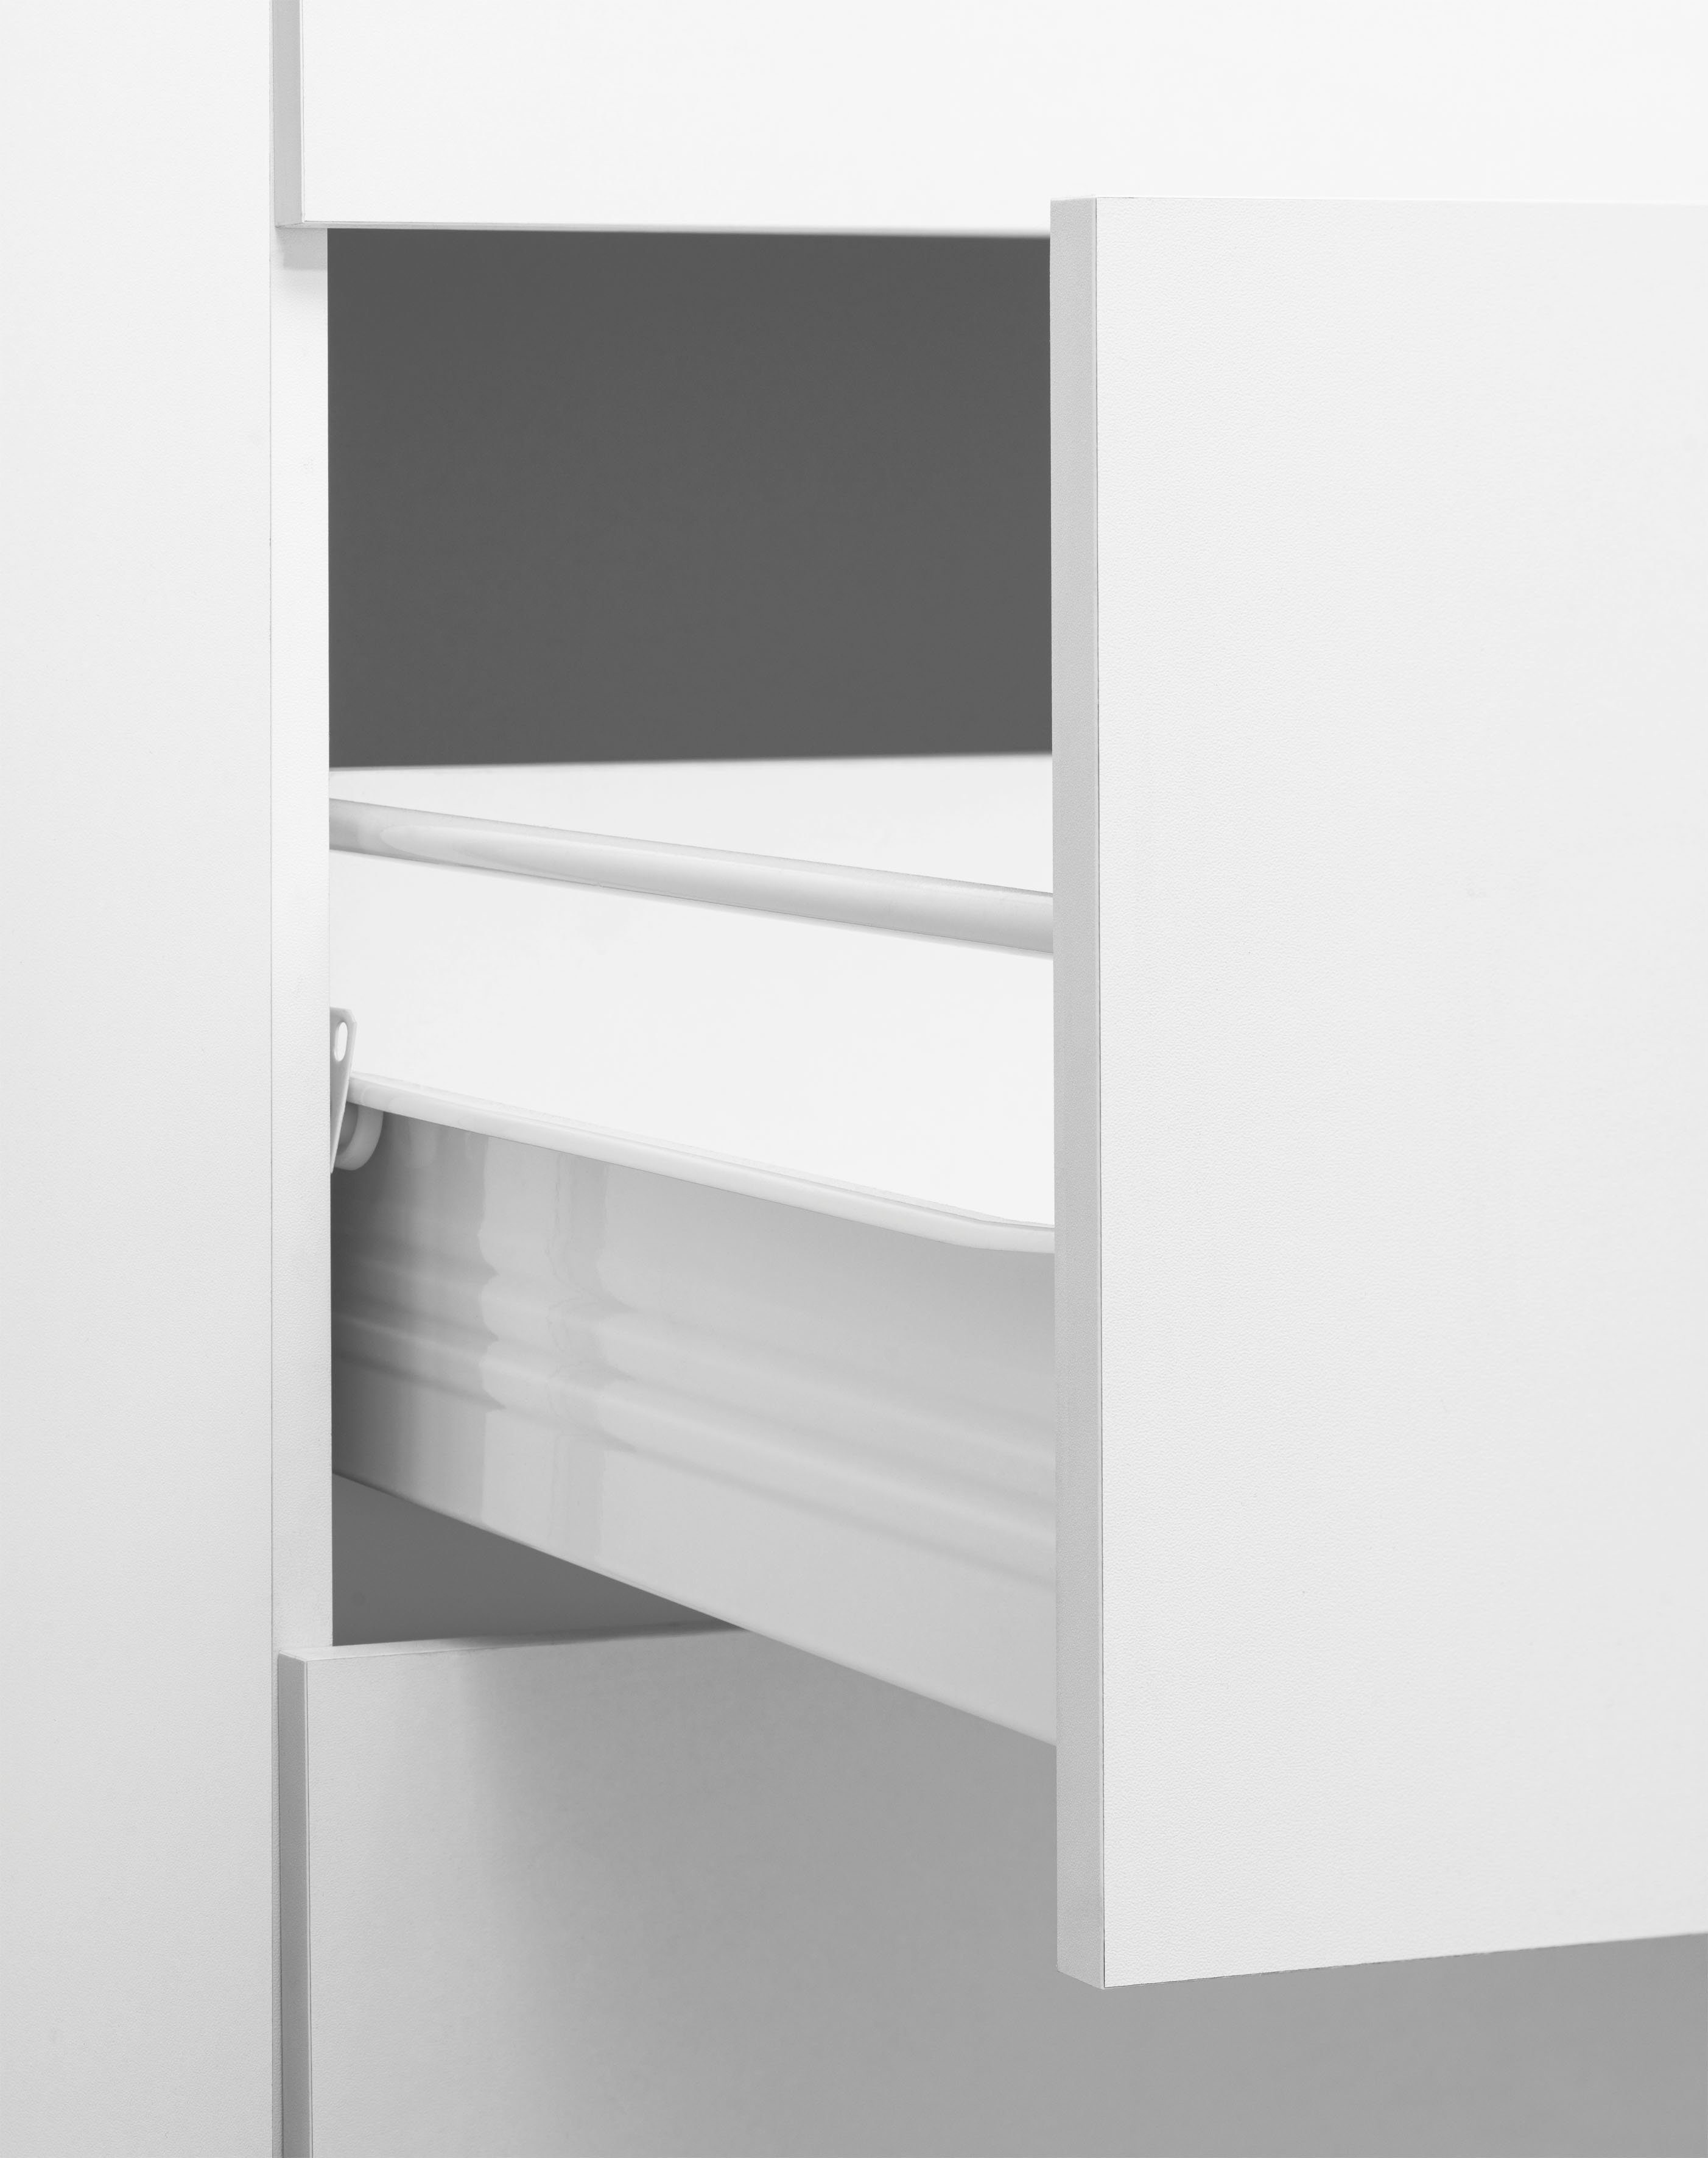 wiho Küchen Winkelküche Unna, cm 260 Stellbreite weiß mit | Weiß/Kastelleiche E-Geräten, x 220